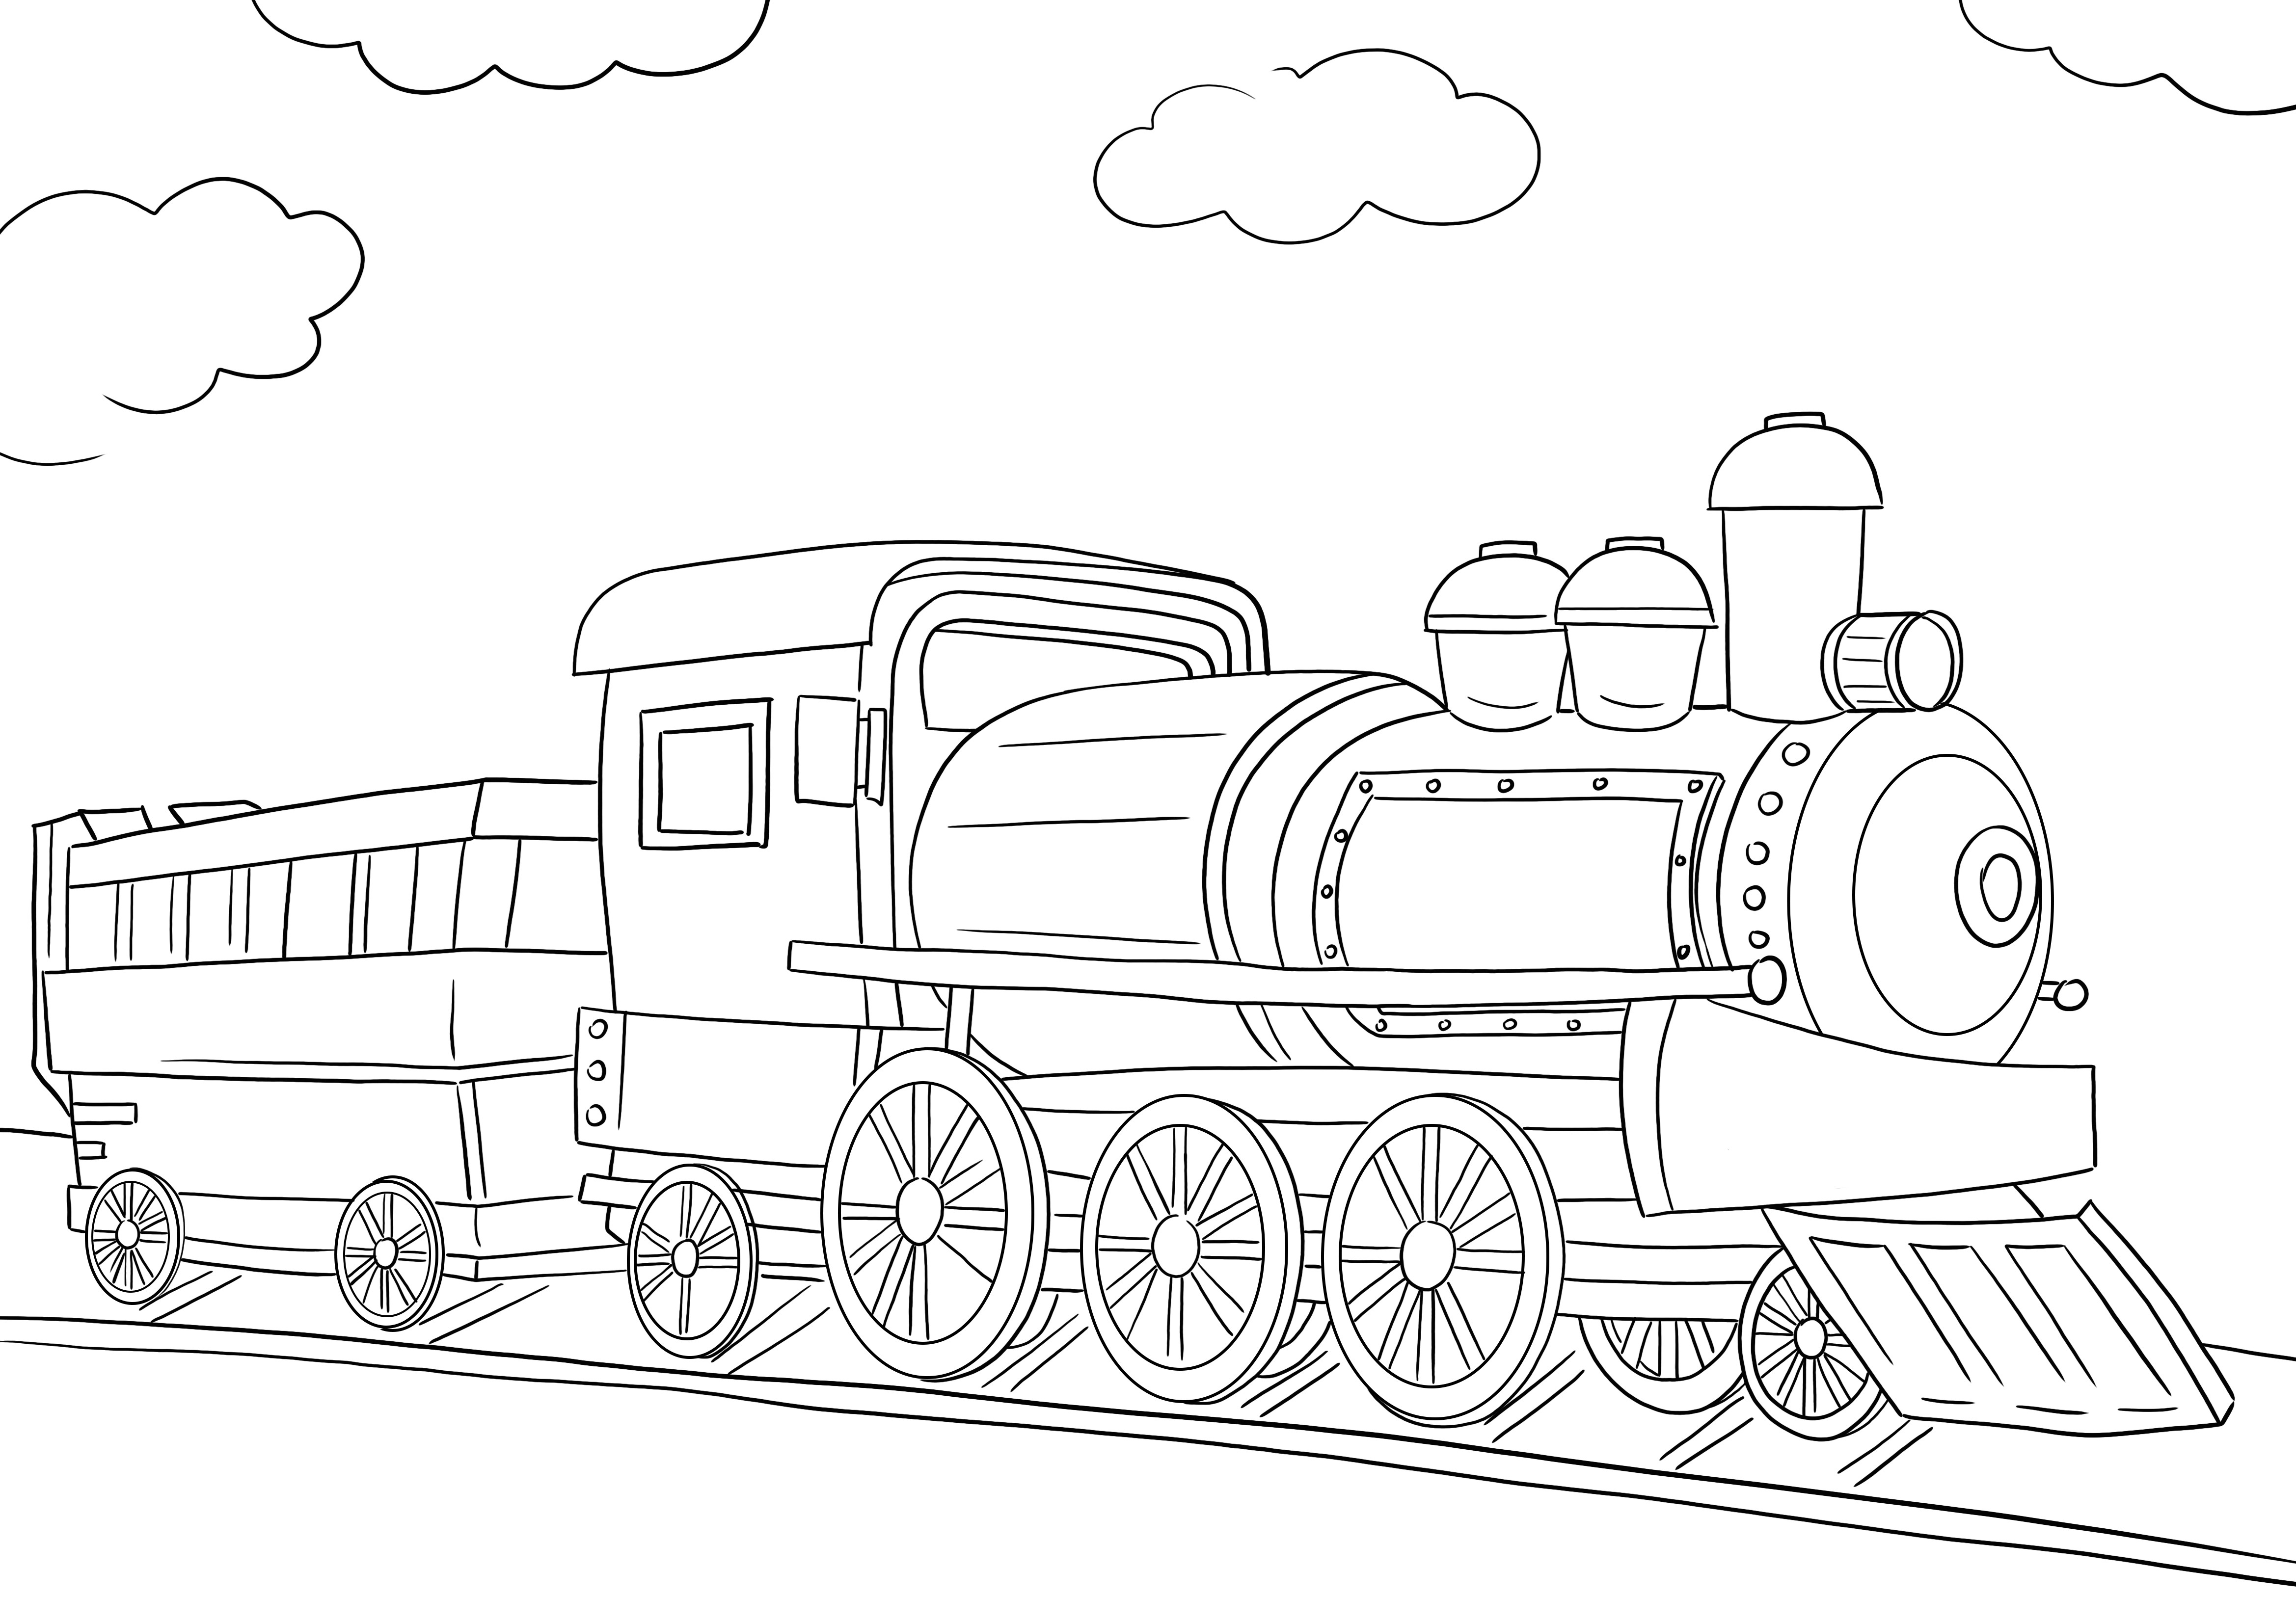 Darmowy obraz do kolorowania lokomotywy pociągu do wydrukowania lub pobrania